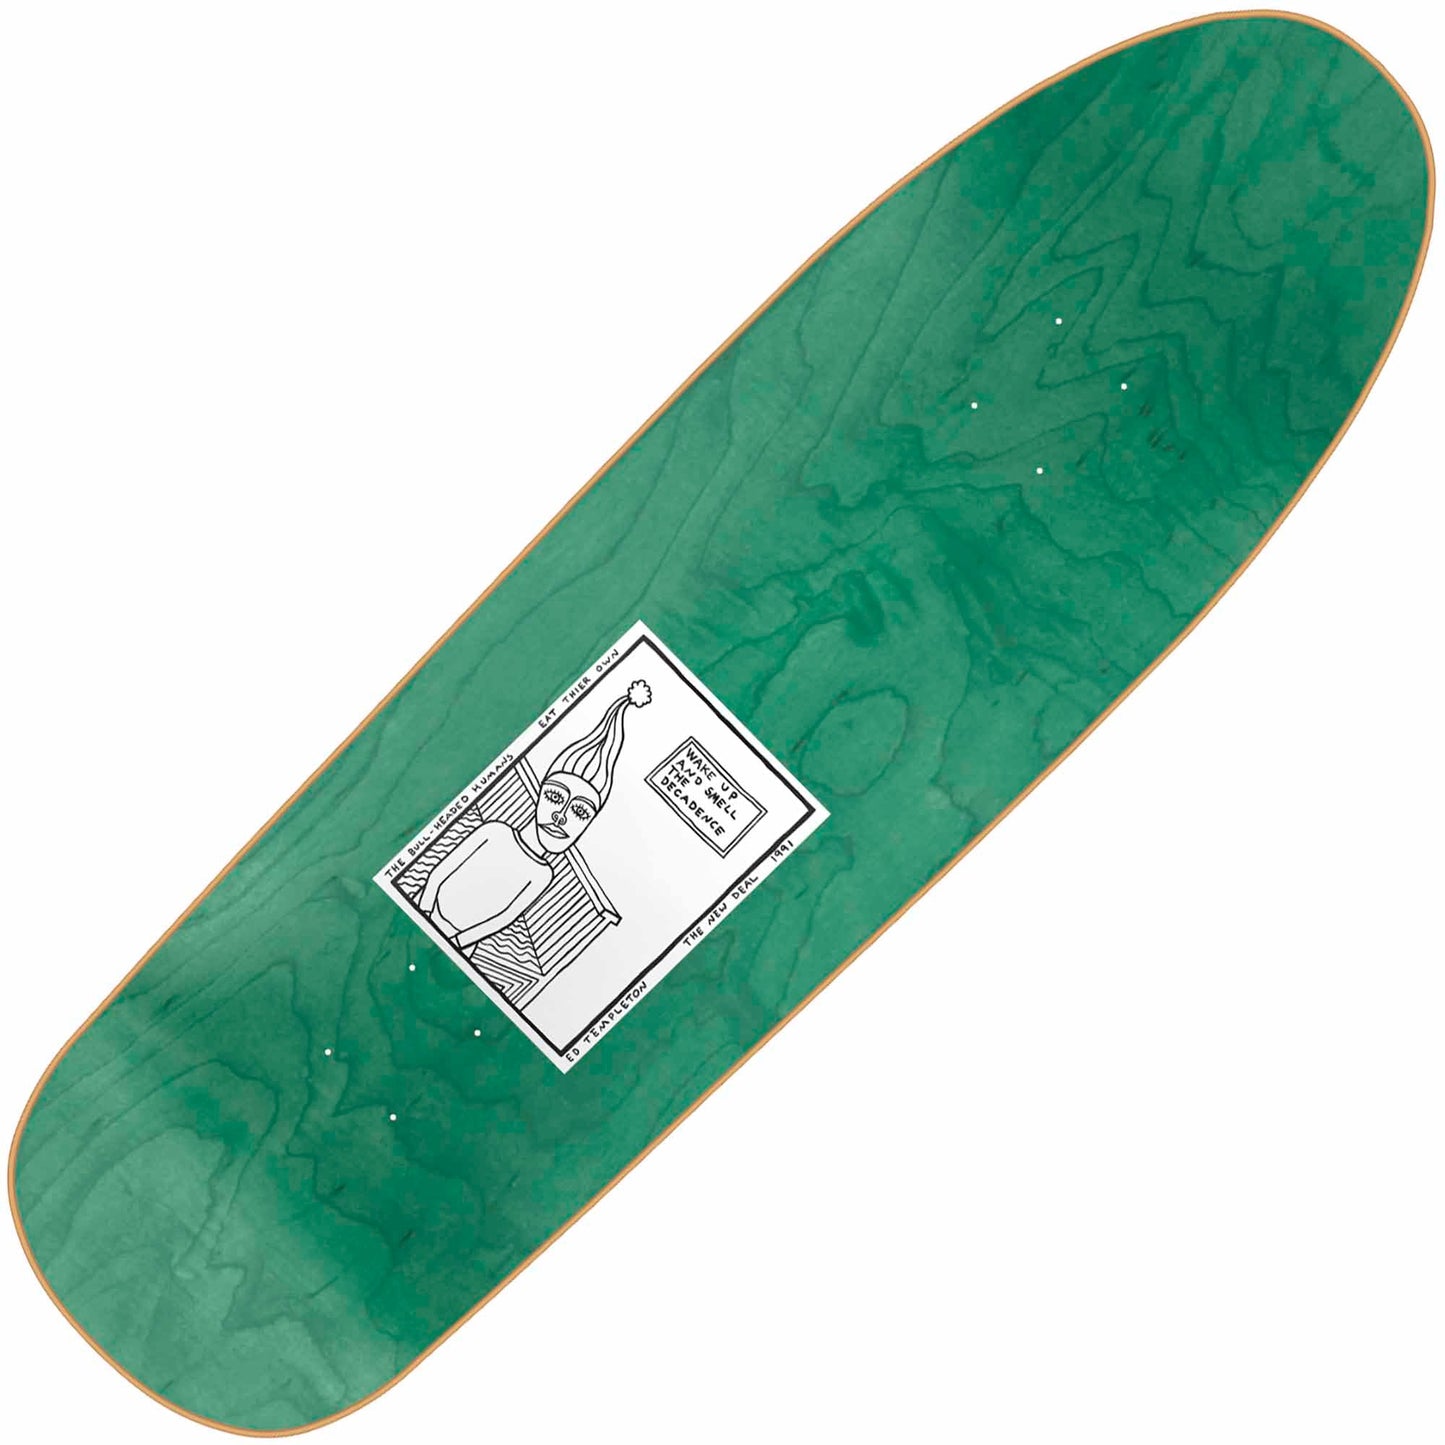 New Deal Templeton Bullman Reissue Deck, Green (9.35") - Tiki Room Skateboards - 2